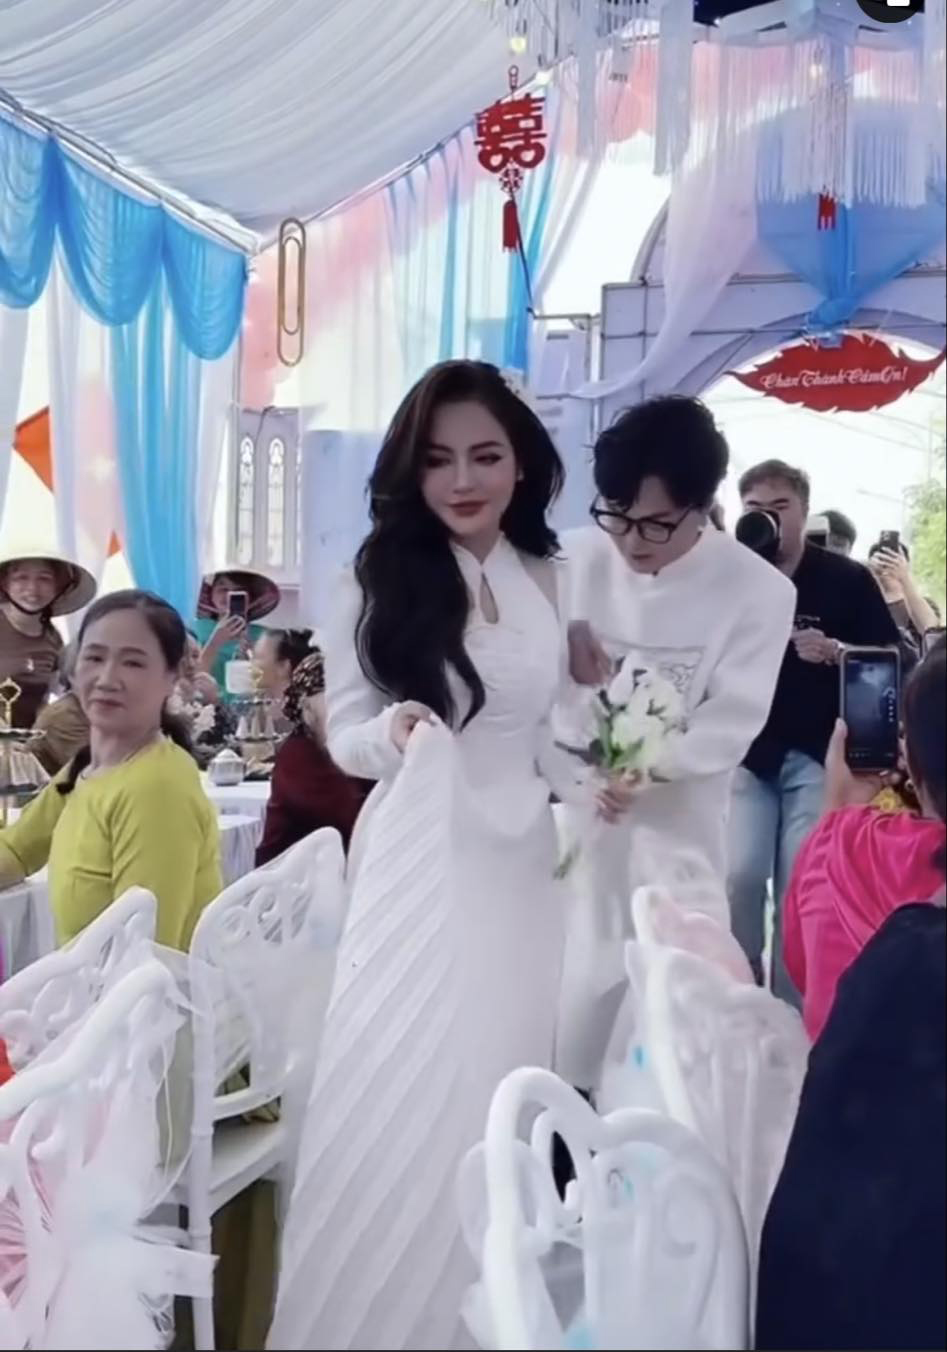 Phạm Thoại và vợ Khánh Vân trong tiệc cưới sáng nay tại Hải Phòng.